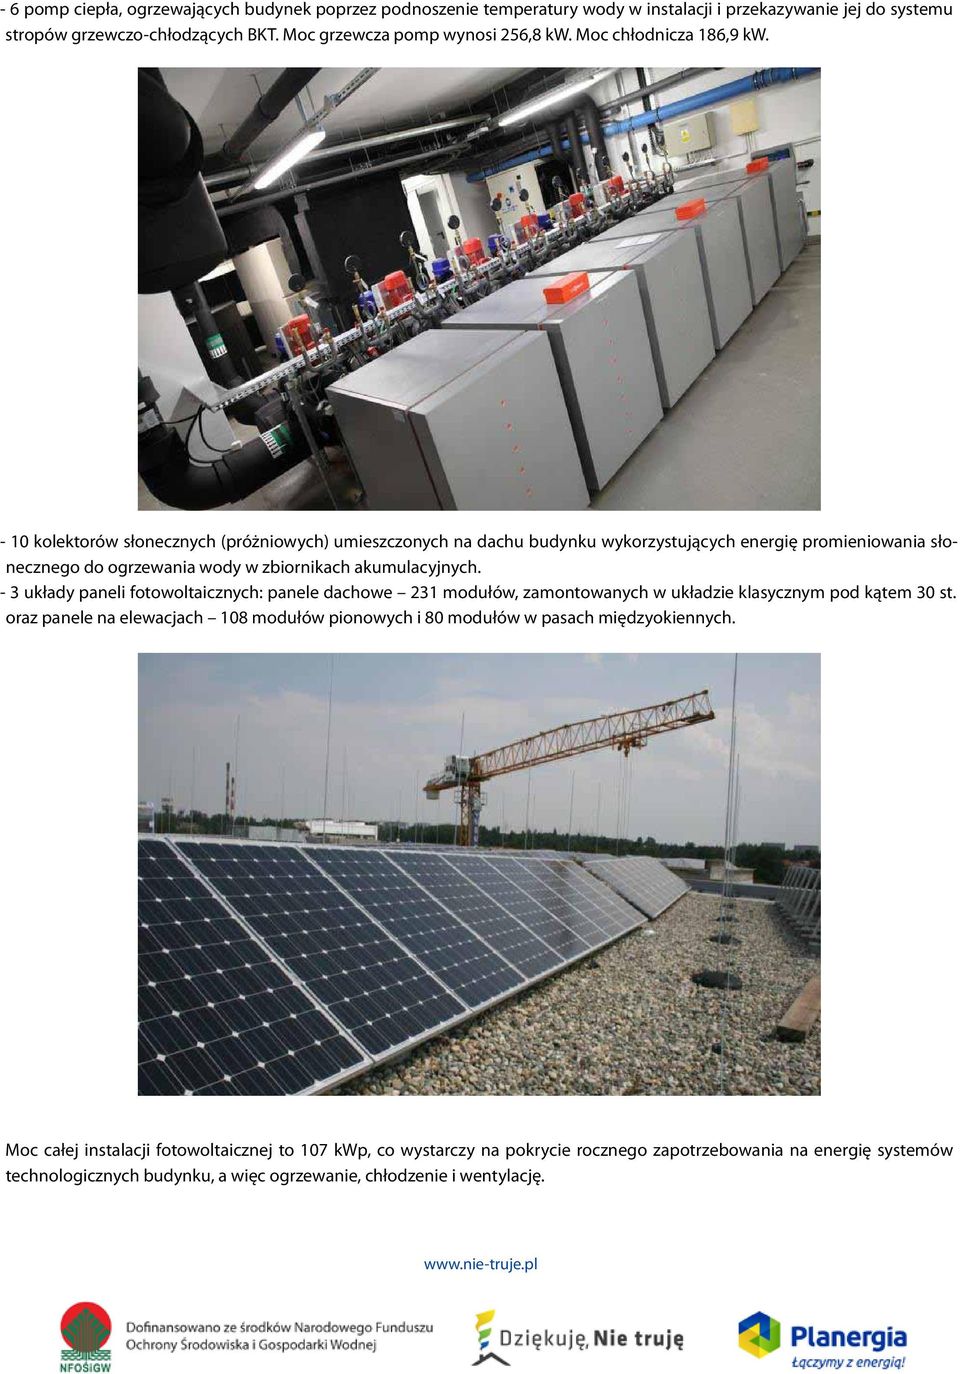 - 10 kolektorów słonecznych (próżniowych) umieszczonych na dachu budynku wykorzystujących energię promieniowania słonecznego do ogrzewania wody w zbiornikach akumulacyjnych.